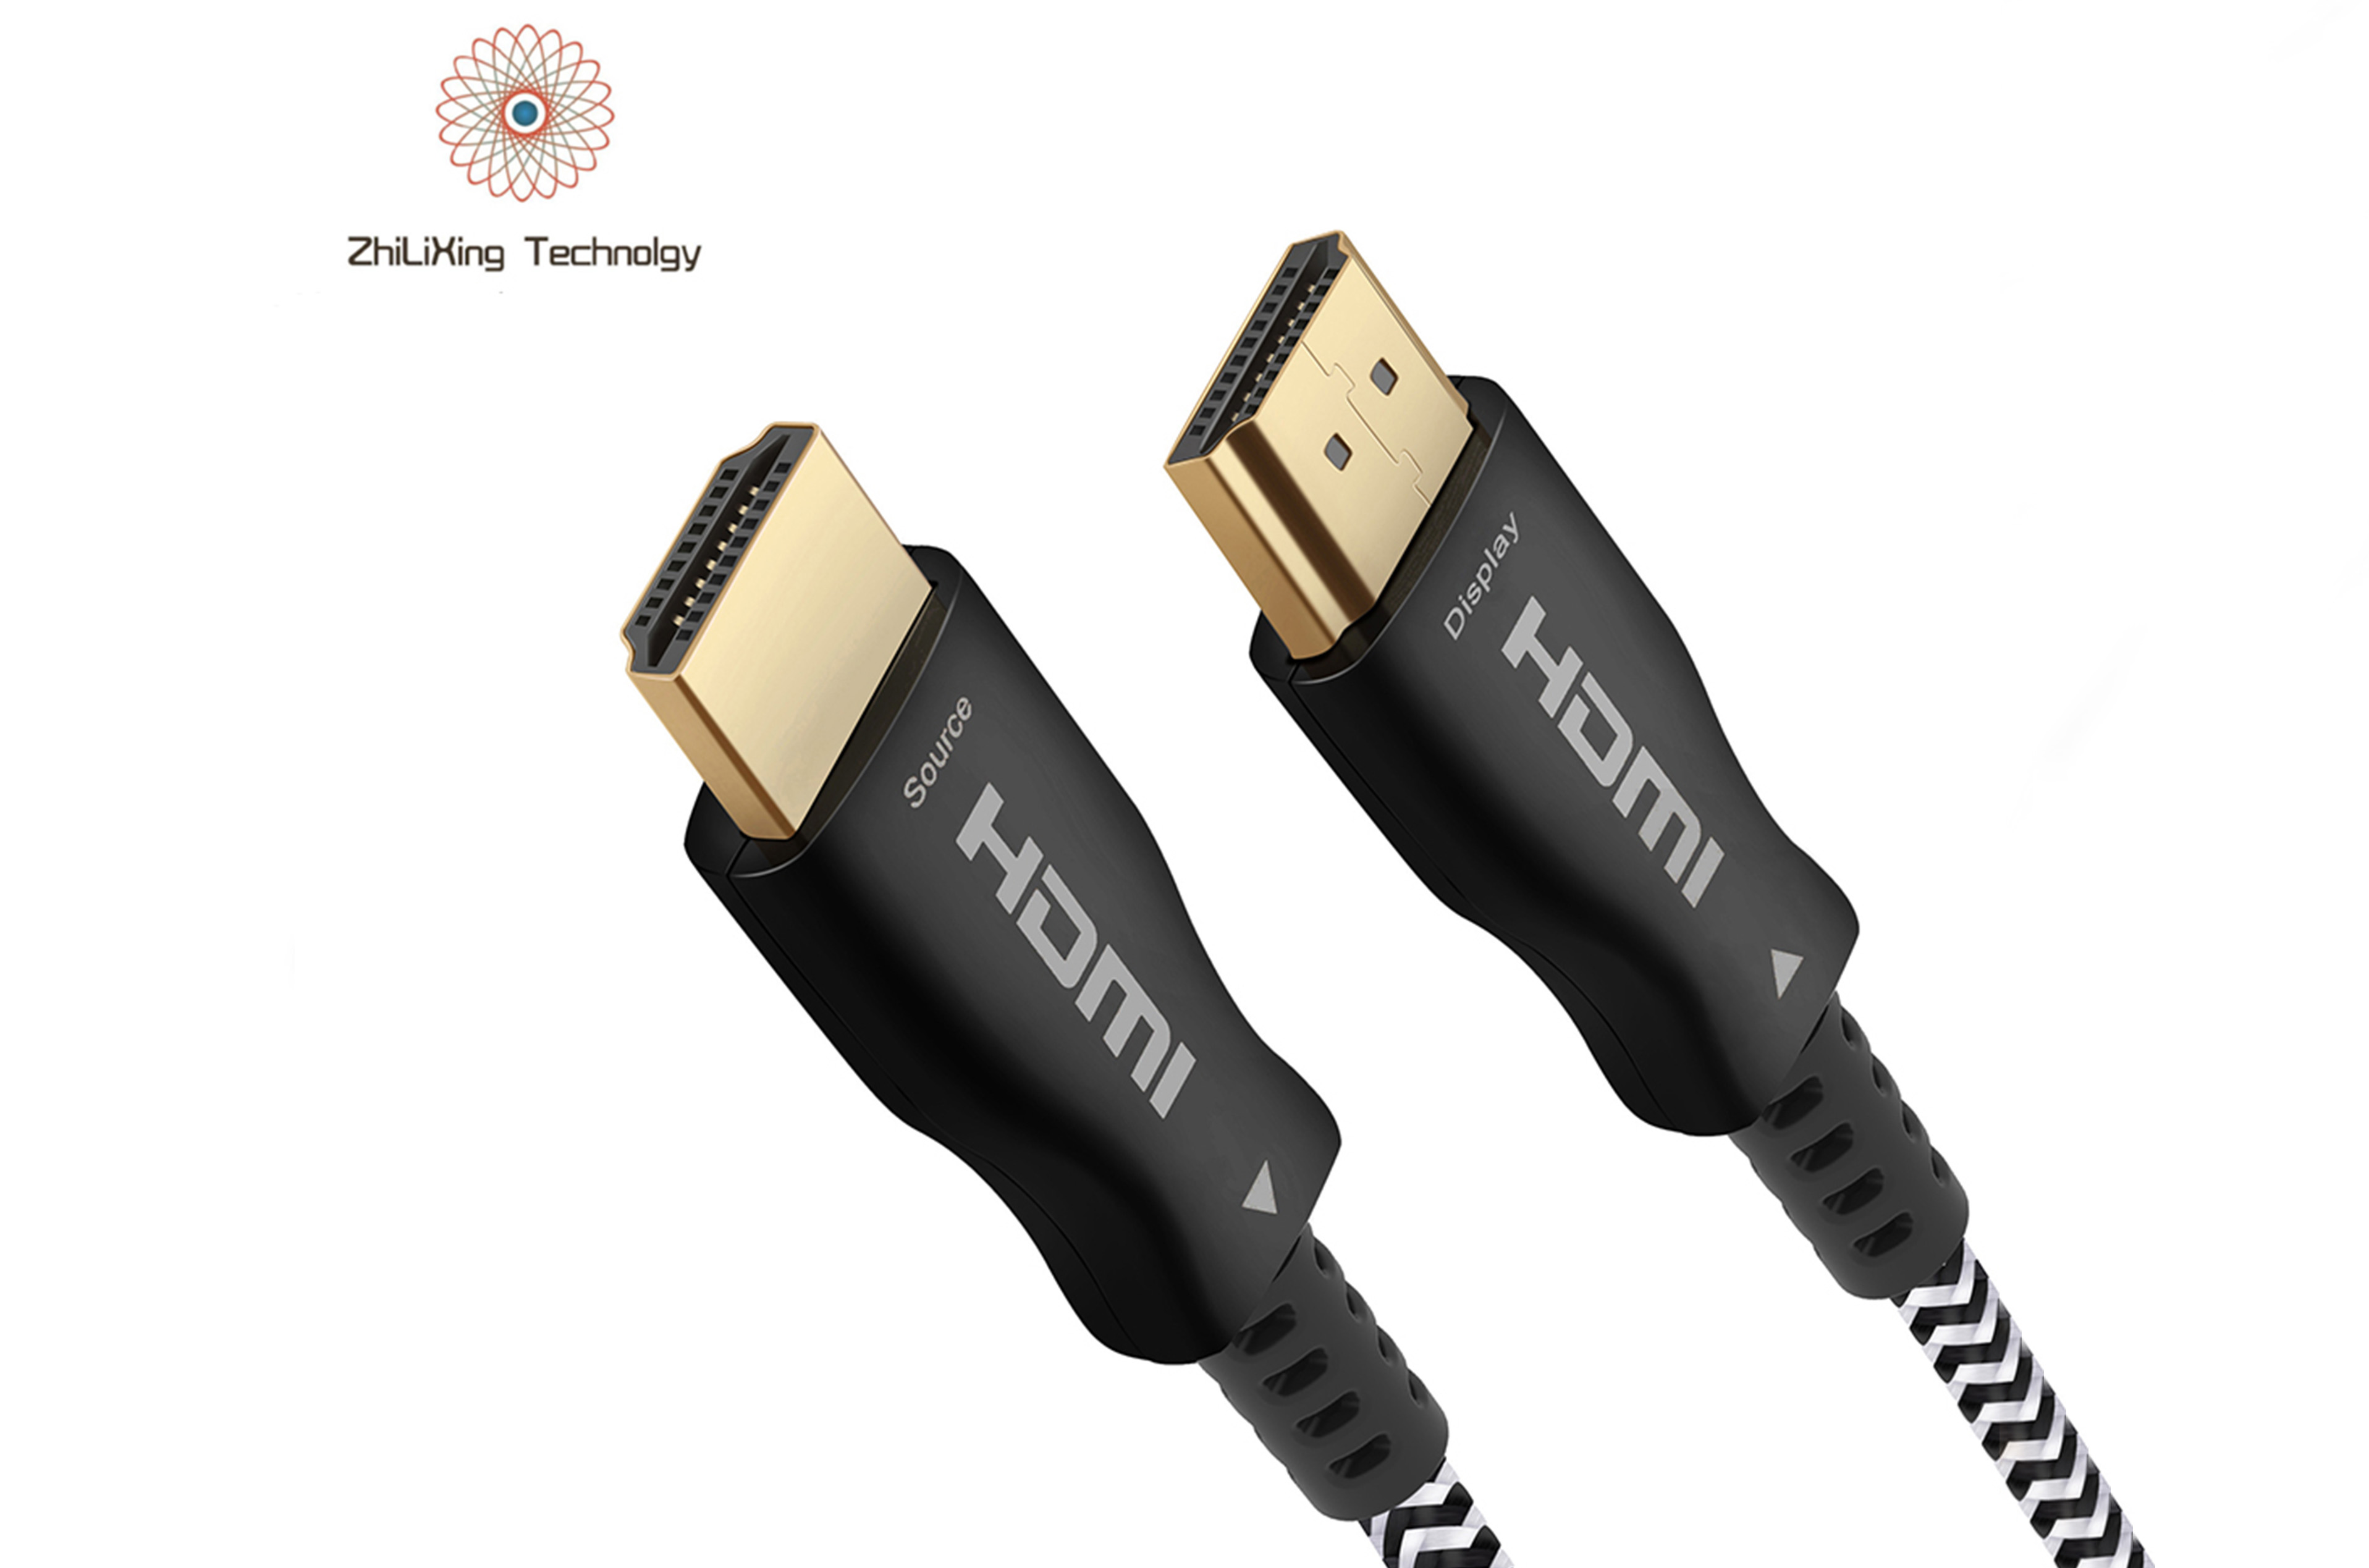 HDMI fiber optic cable